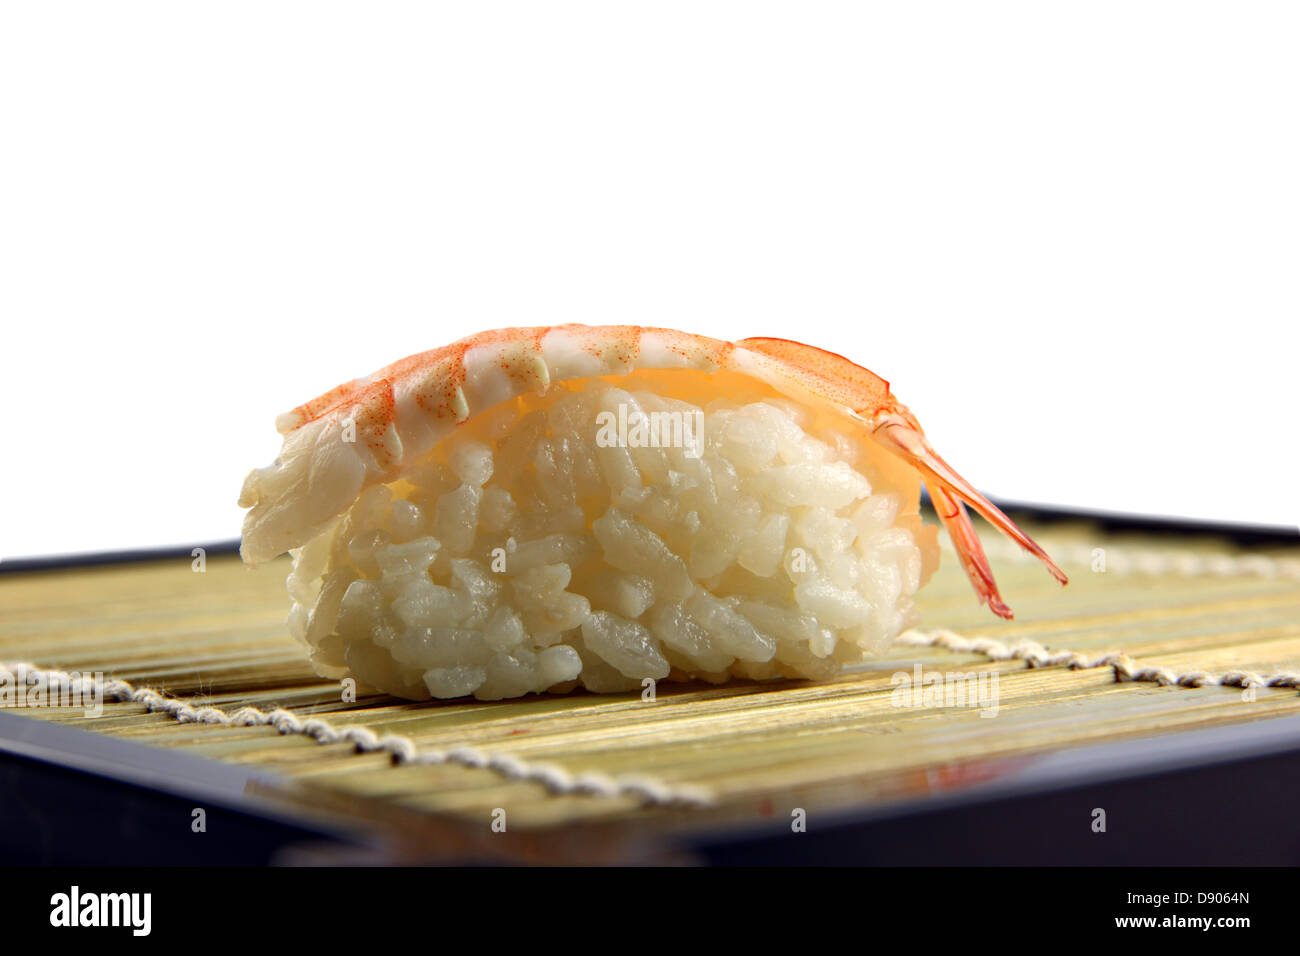 Lato sushi immagini e fotografie stock ad alta risoluzione - Alamy